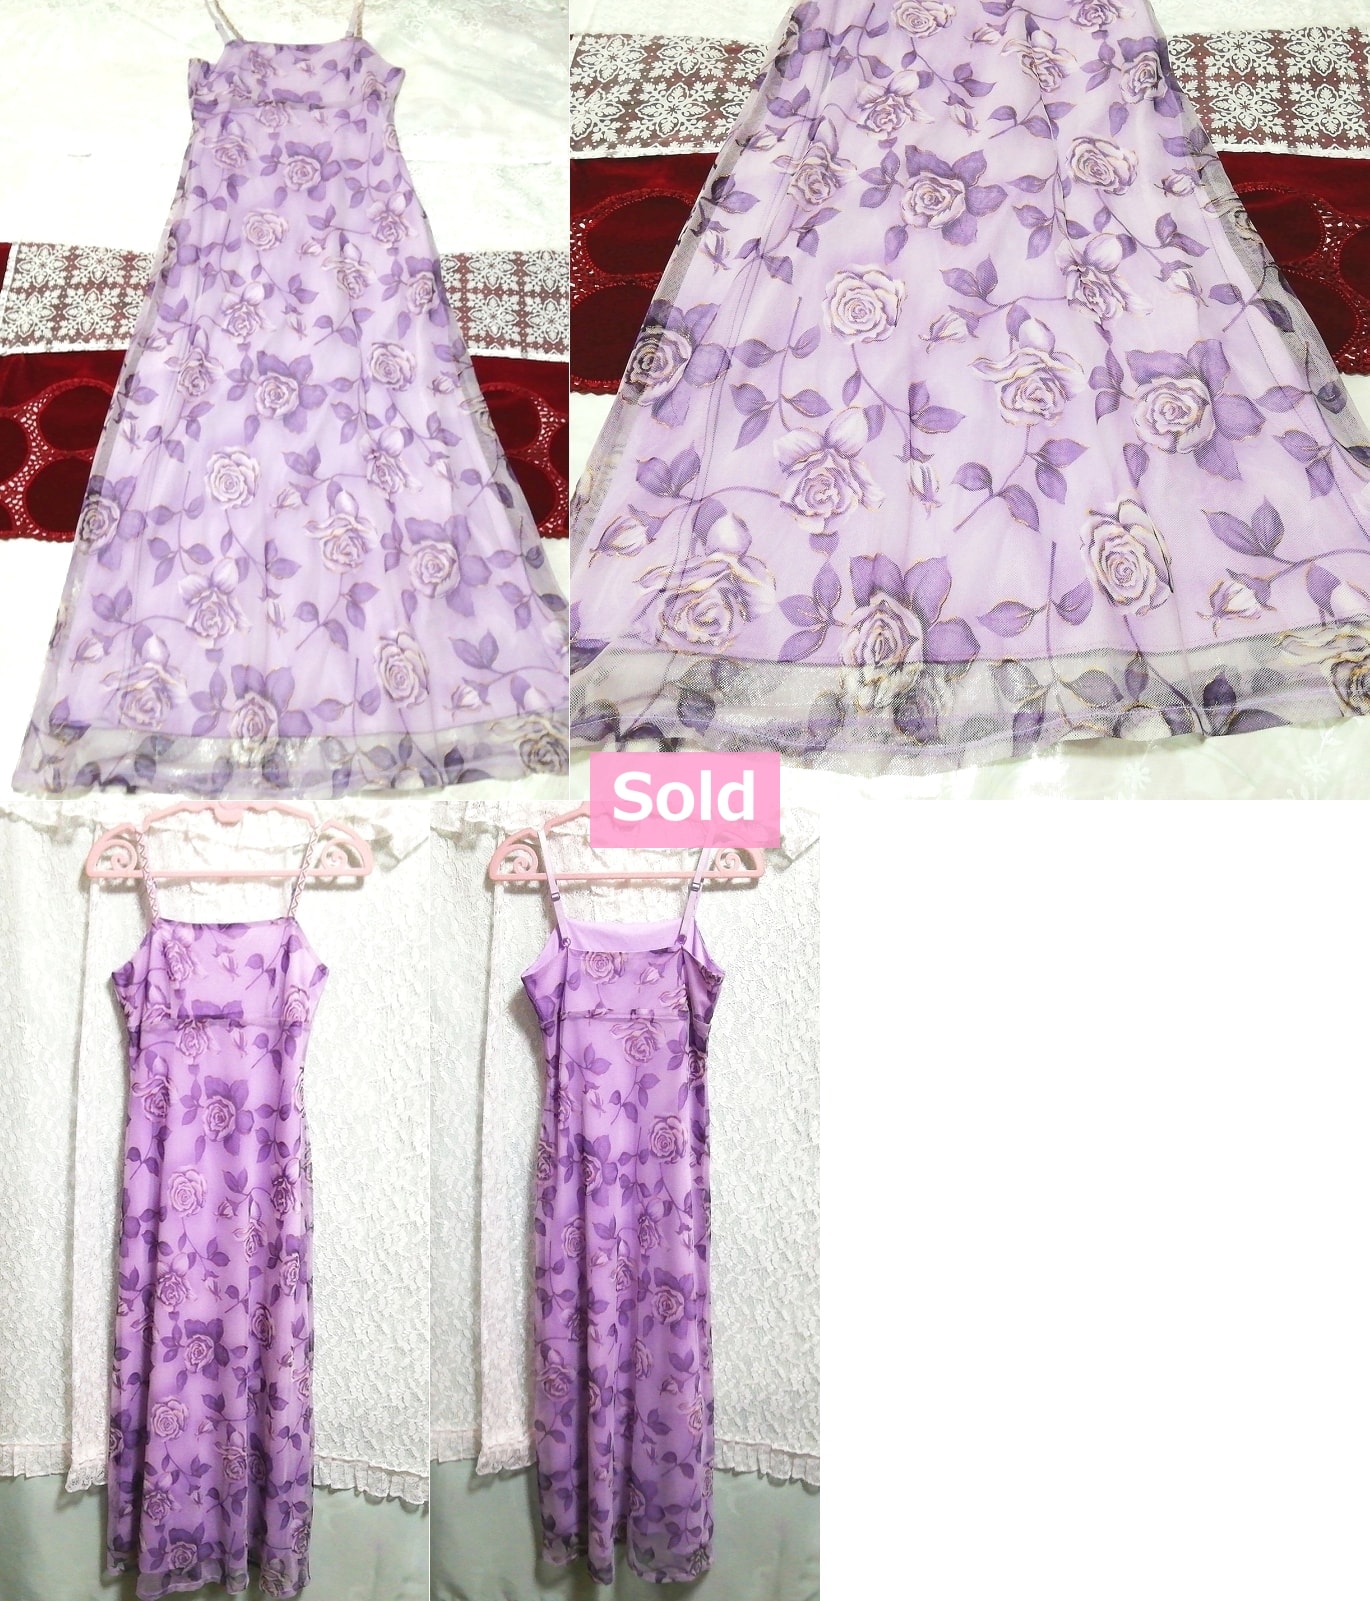 紫色玫瑰蕾丝睡衣吊带背心娃娃装连衣裙超长连衣裙, 时尚, 女士时装, 吊带背心